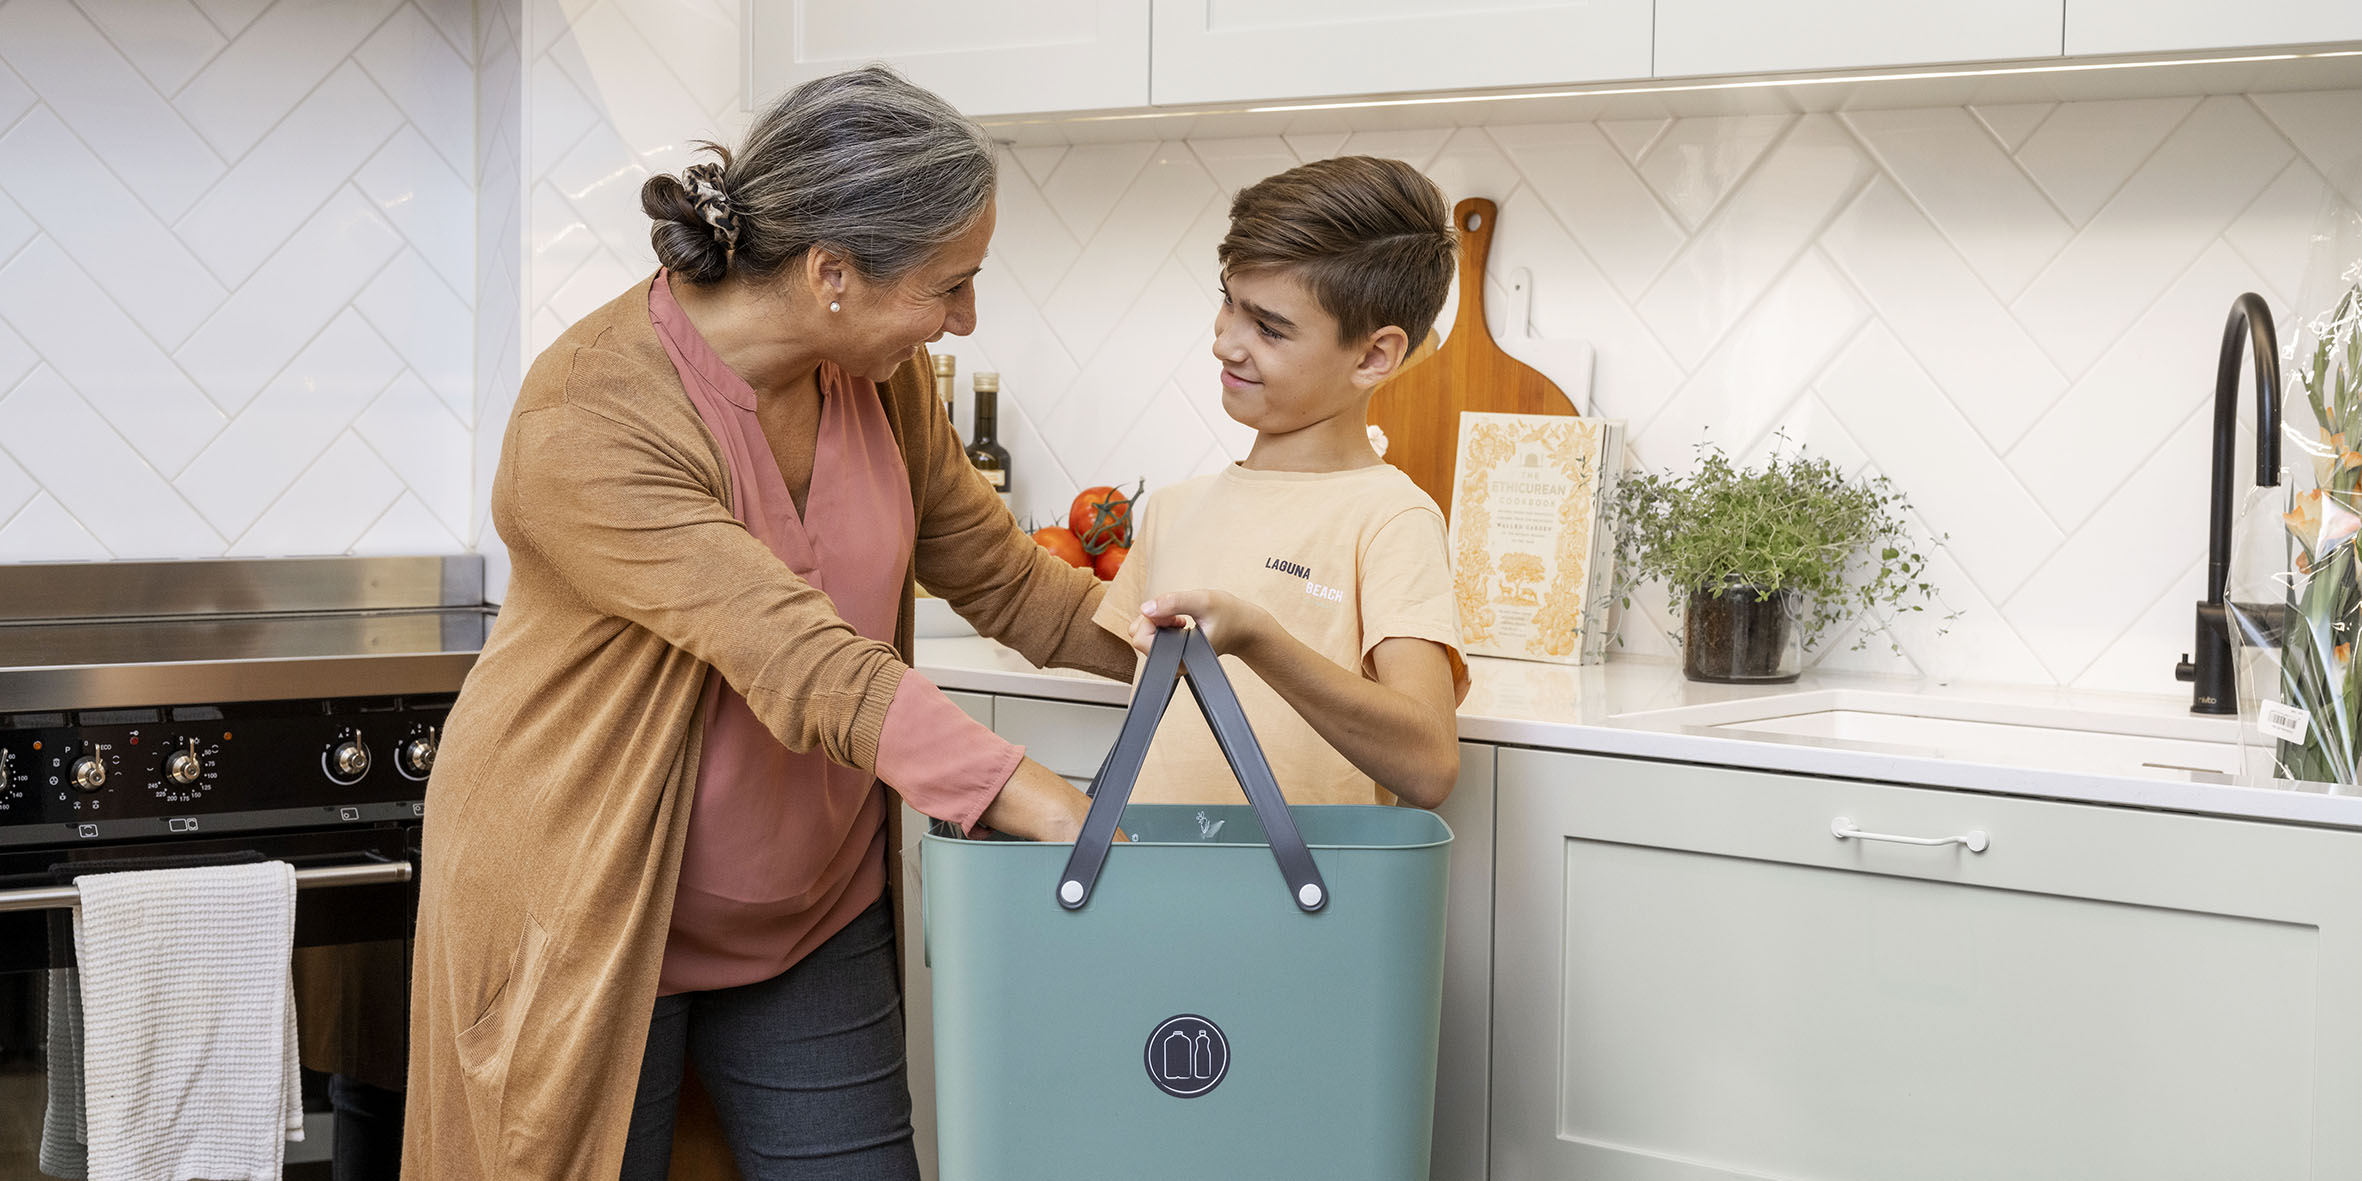 En kvinna med gråsvart hår och en rosa tröja står i ett kök tillsammans med en pojke i gul tröja. De håller med varsin hand i en blå plastlåda med handtag. Bakom ser man en diskbänk med några träskärbrädor och en kokbok.